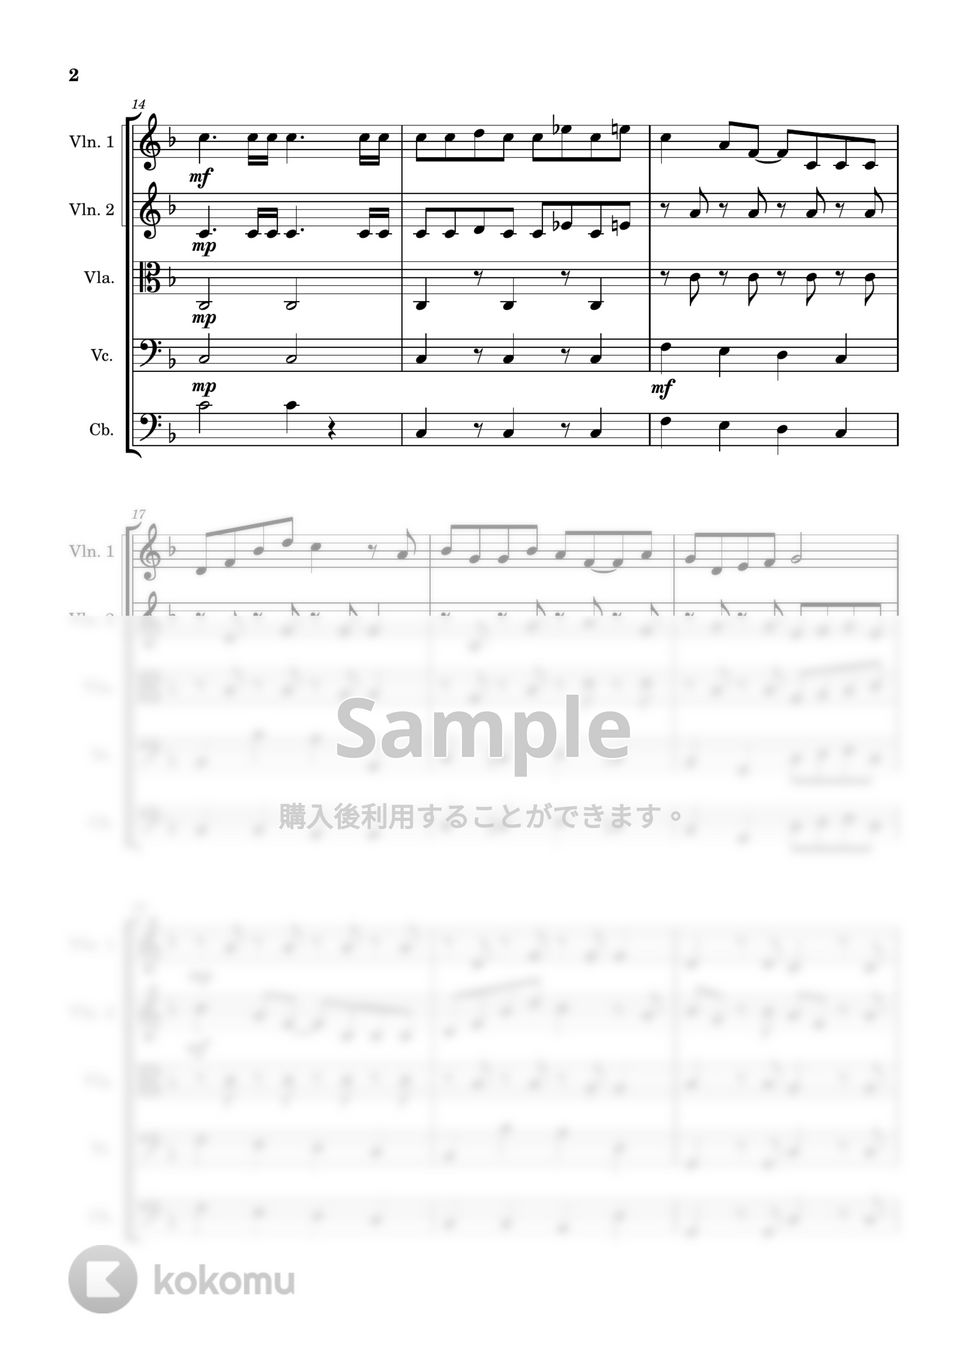 久石譲 - ジブリメドレー (弦楽五重奏) by Cellotto